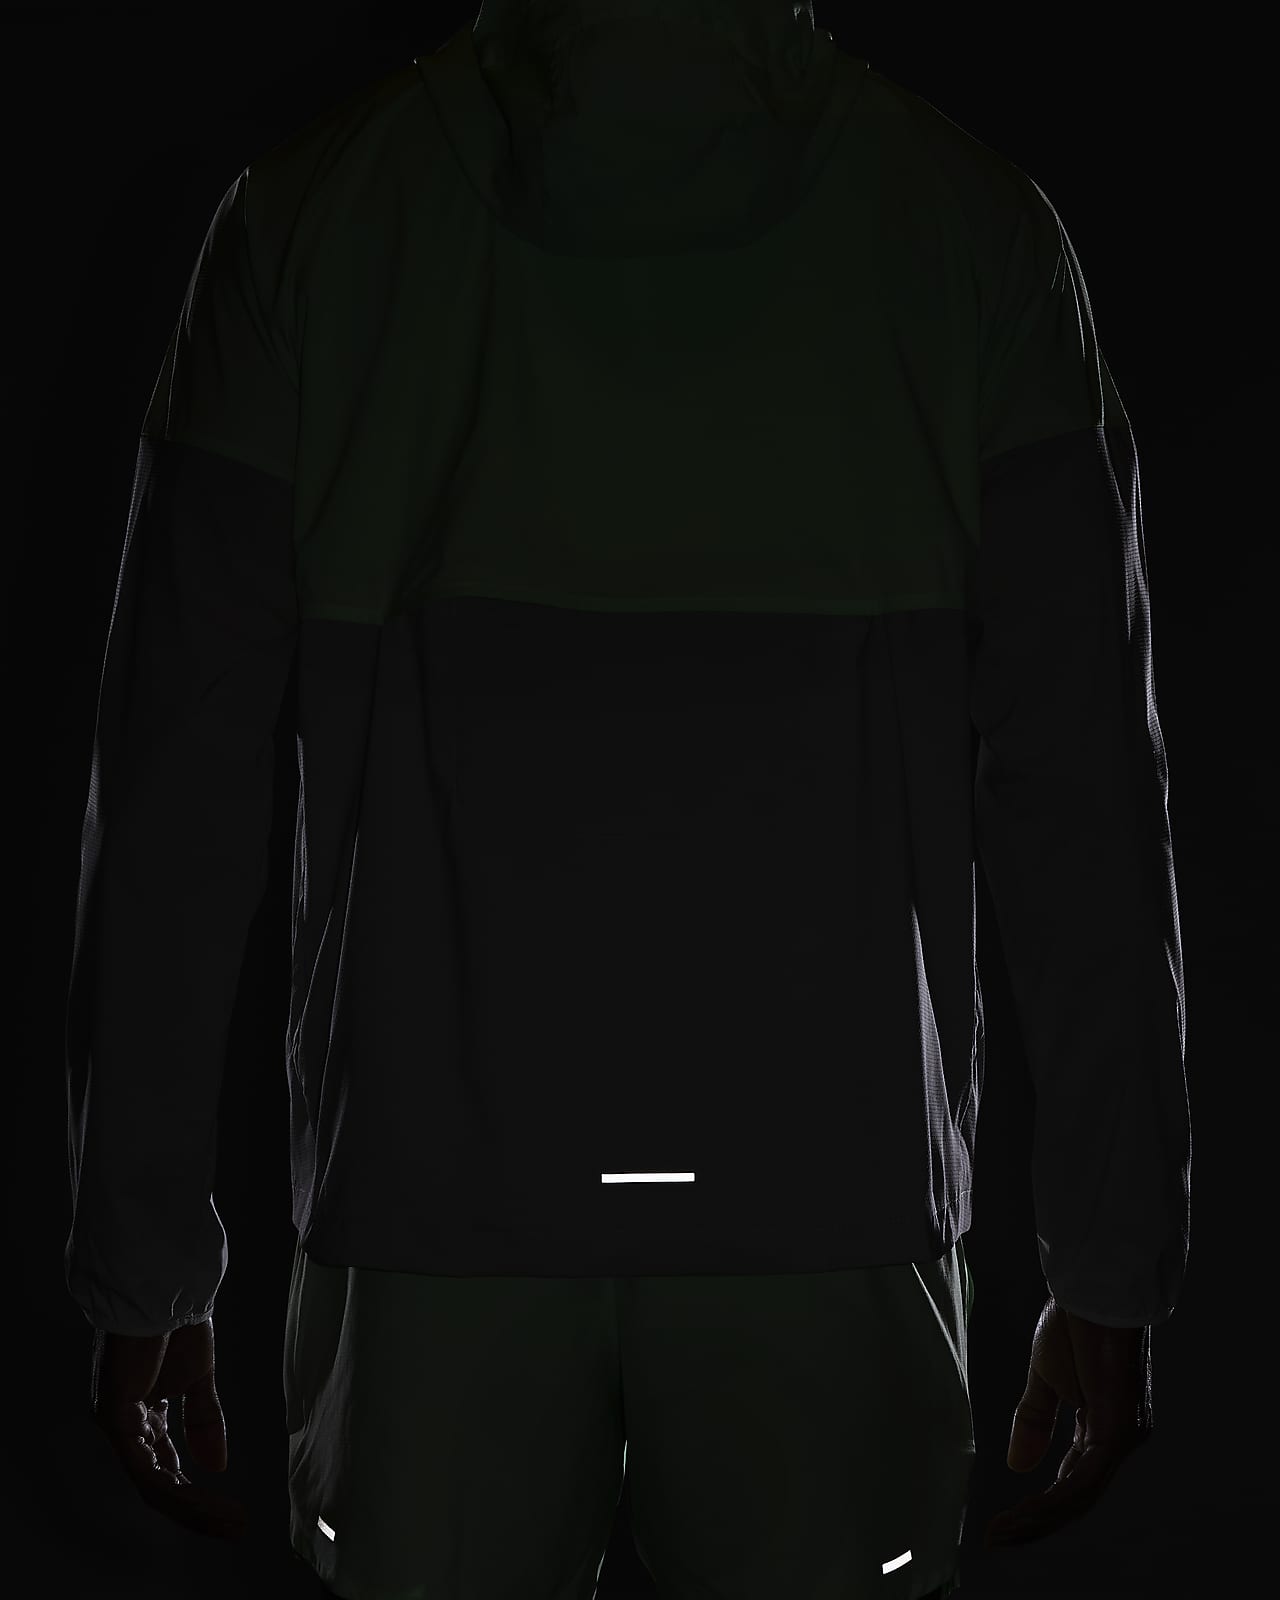 Nike Repel Windrunner Men's UV Running Jacket